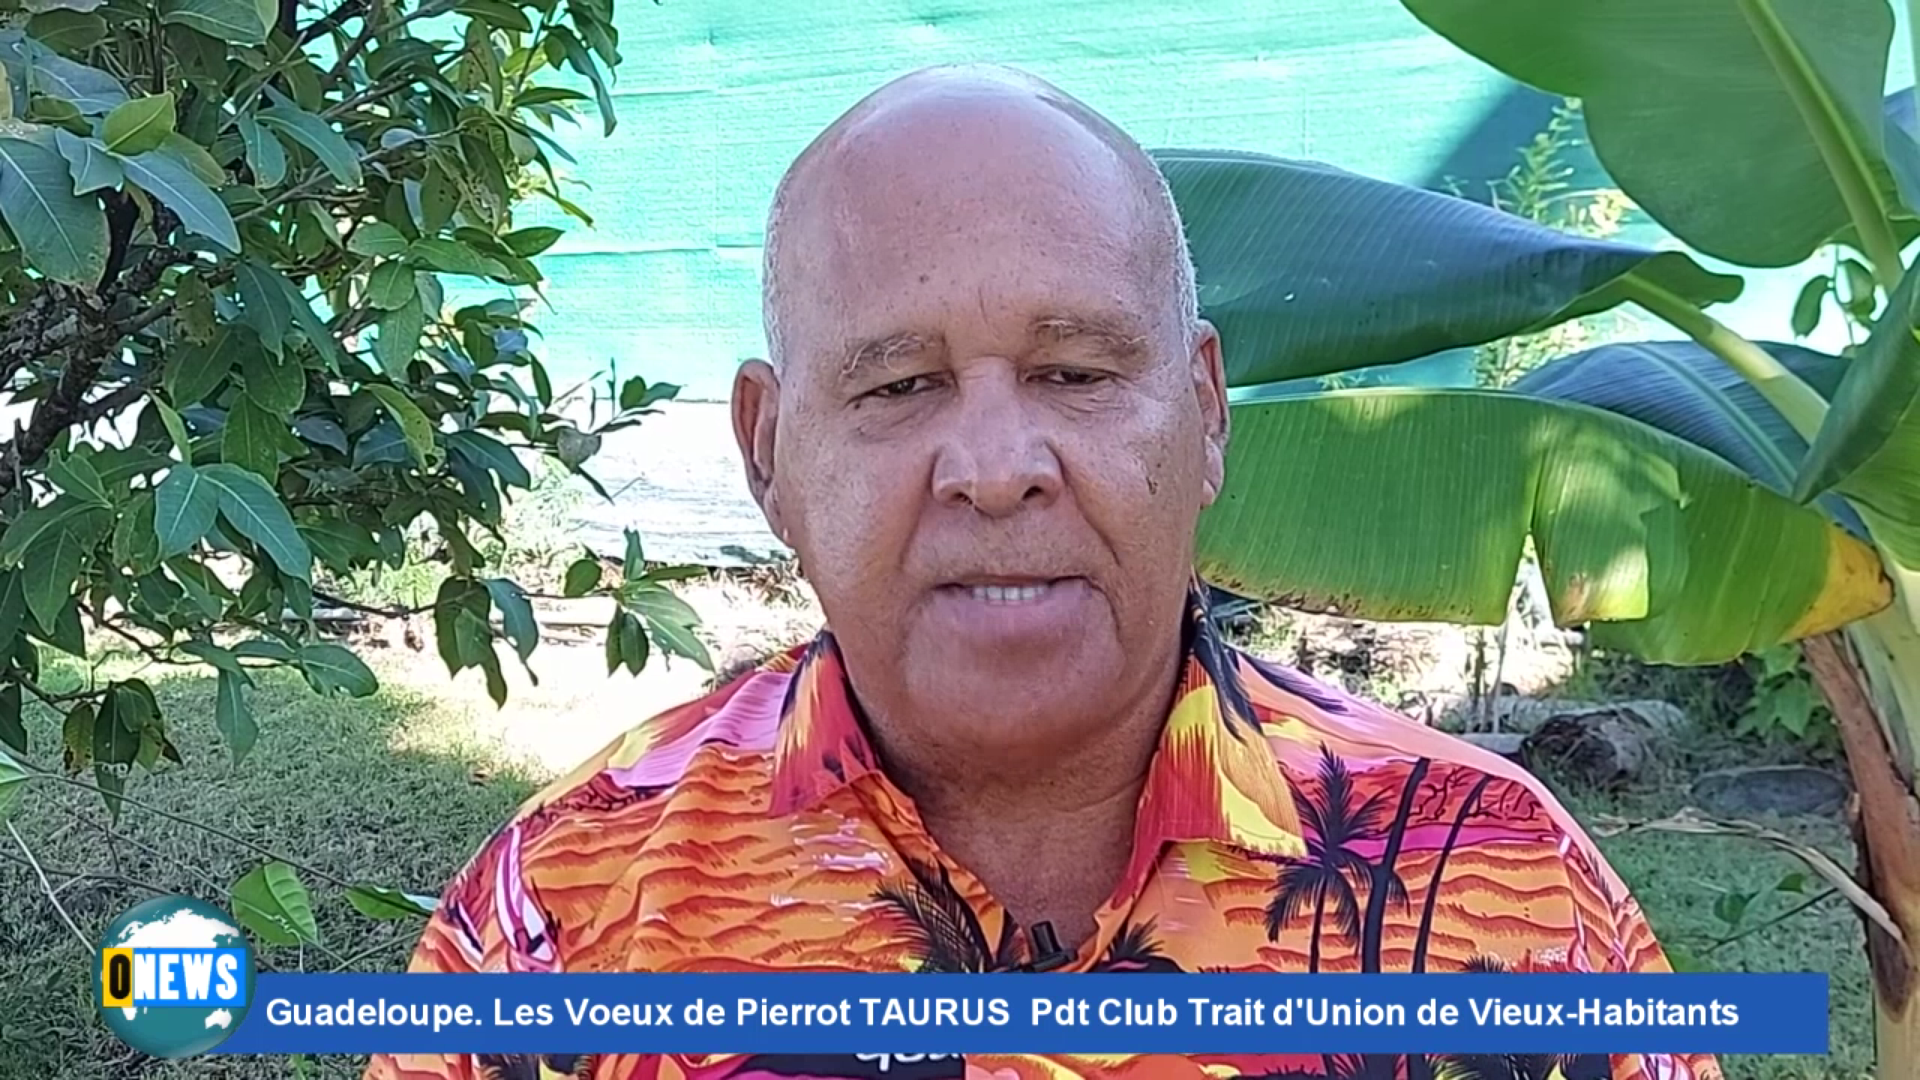 [Vidéo] Onews Guadeloupe. Les Voeux de Pierrot TAURUS Pdt Club Trait d’Union de Vieux-Habitants